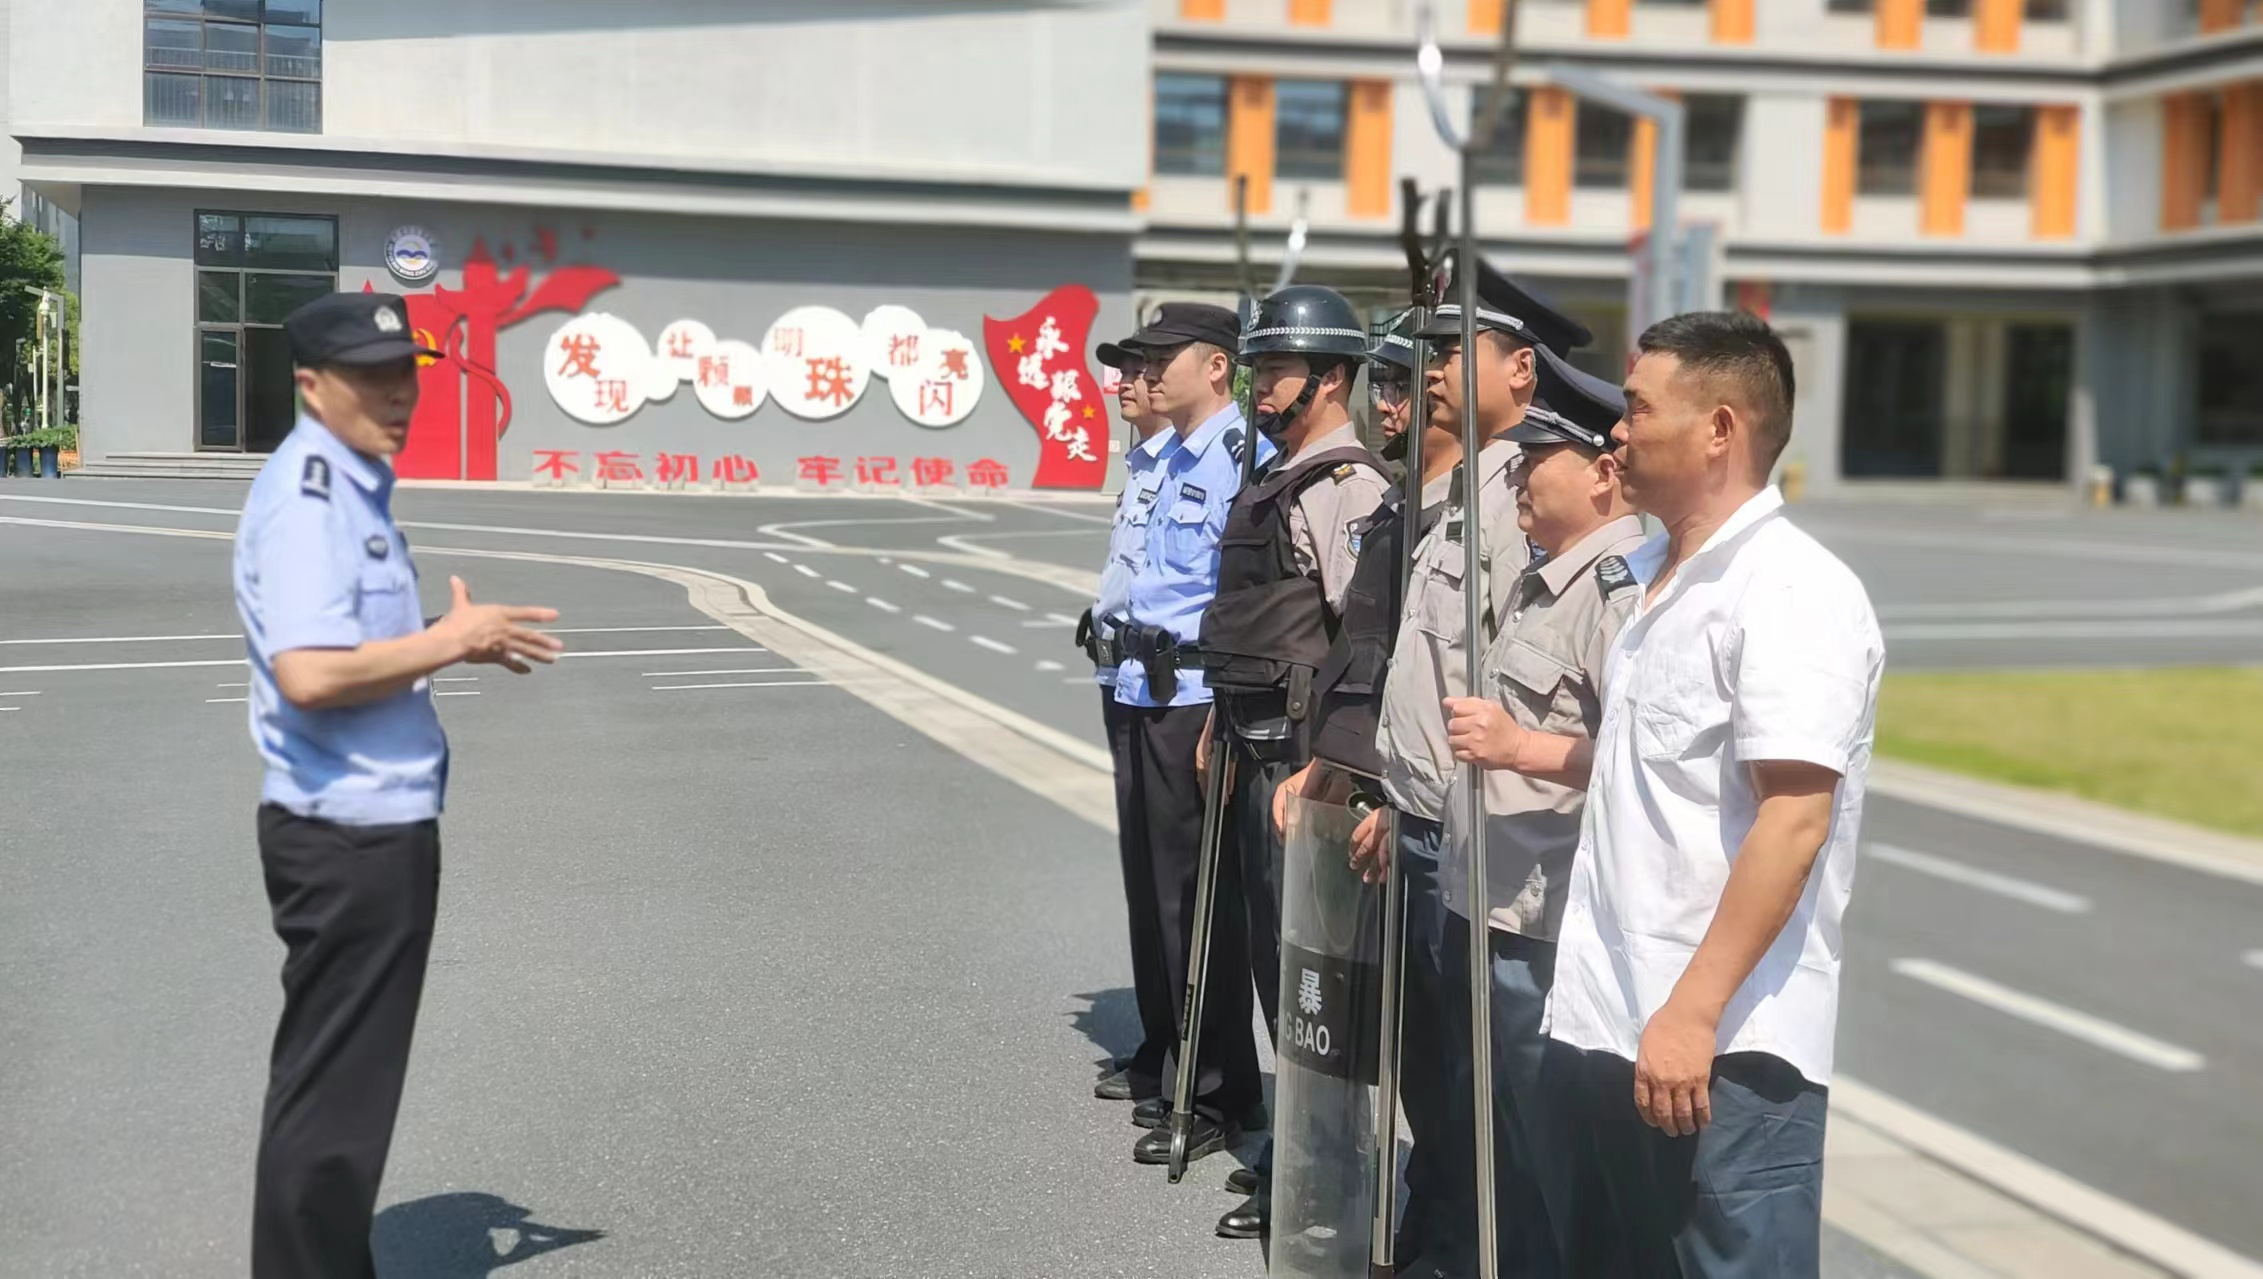 安徽天安保安服务有限公司组织开展系列 应急演练活动